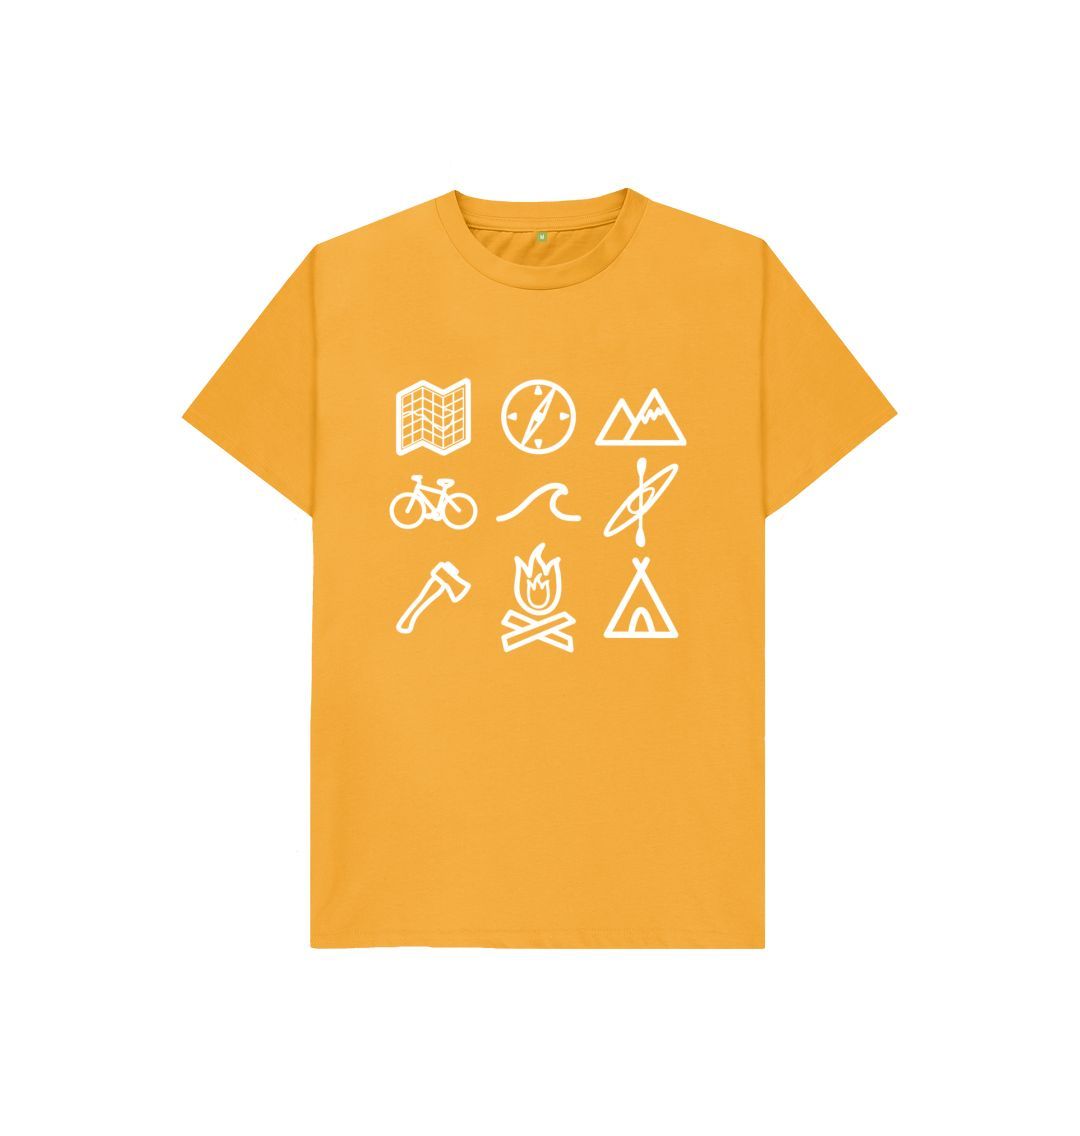 Mustard P1AN Outdoor Activity Childrens T-shirt